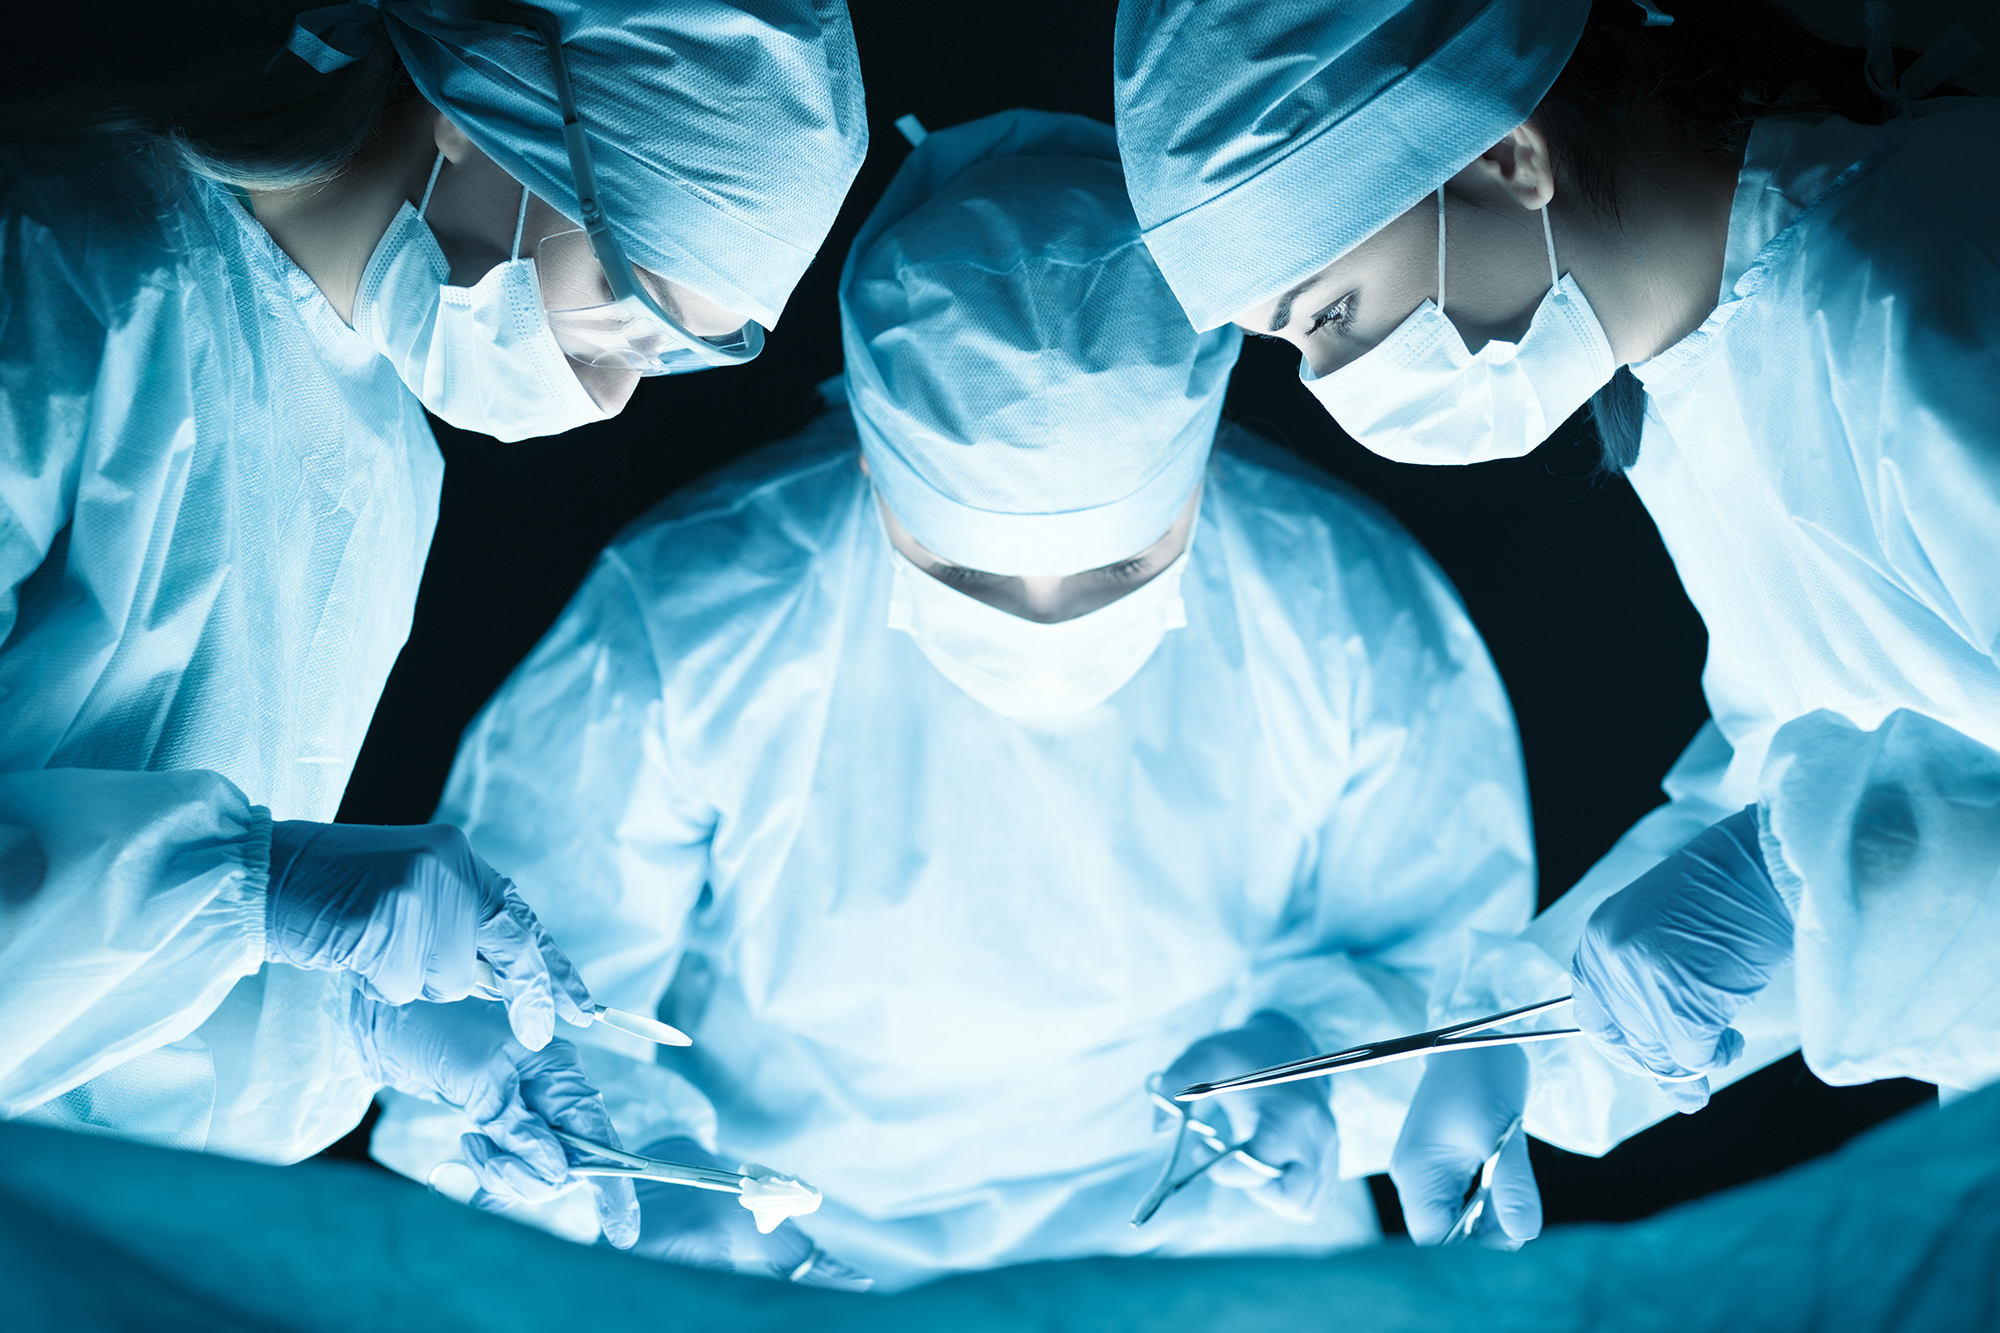 Chirurginnen liefern bessere Resultate als männliche Kollegen